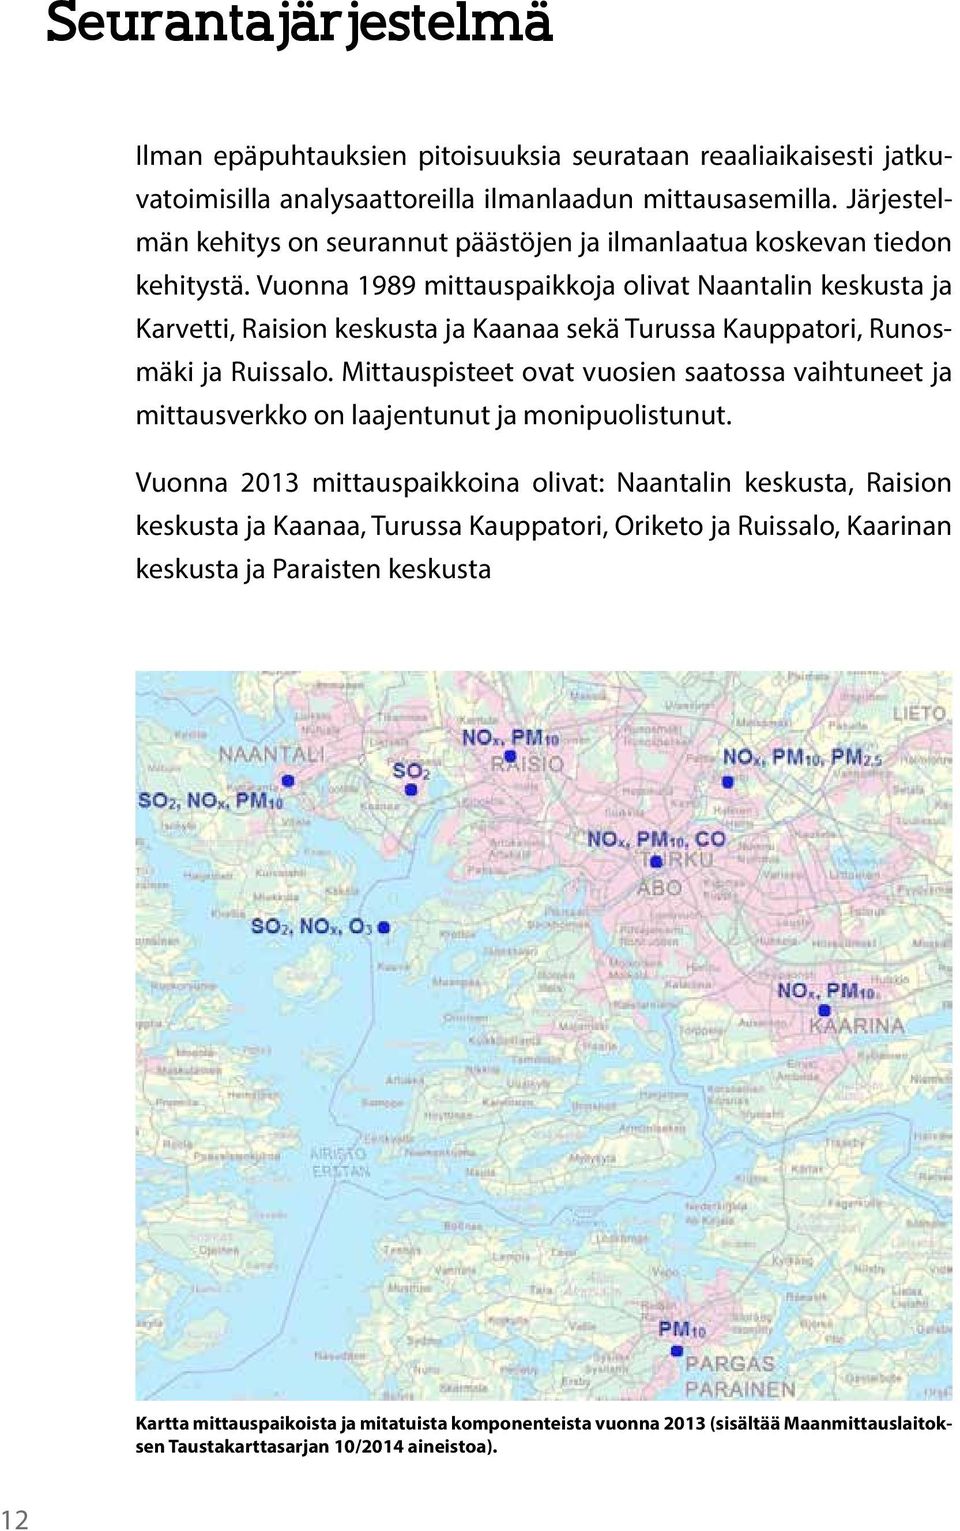 Vuonna 1989 mittauspaikkoja olivat Naantalin keskusta ja Karvetti, Raision keskusta ja Kaanaa sekä Turussa Kauppatori, Runosmäki ja Ruissalo.